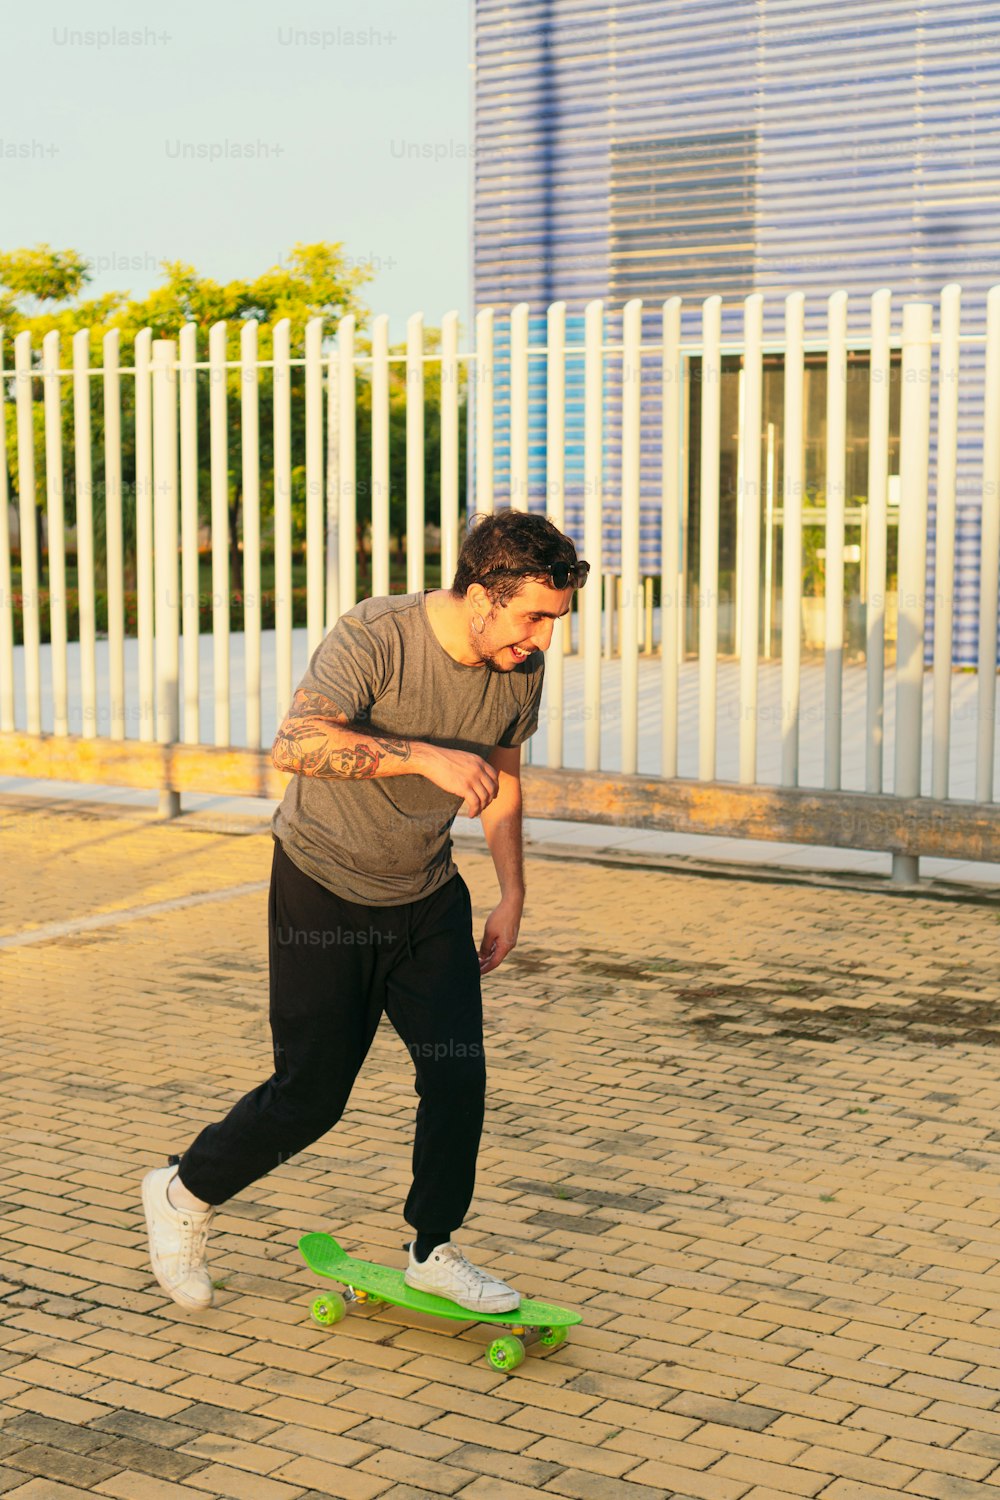 un giovane che usa il suo skateboard in una giornata di sole